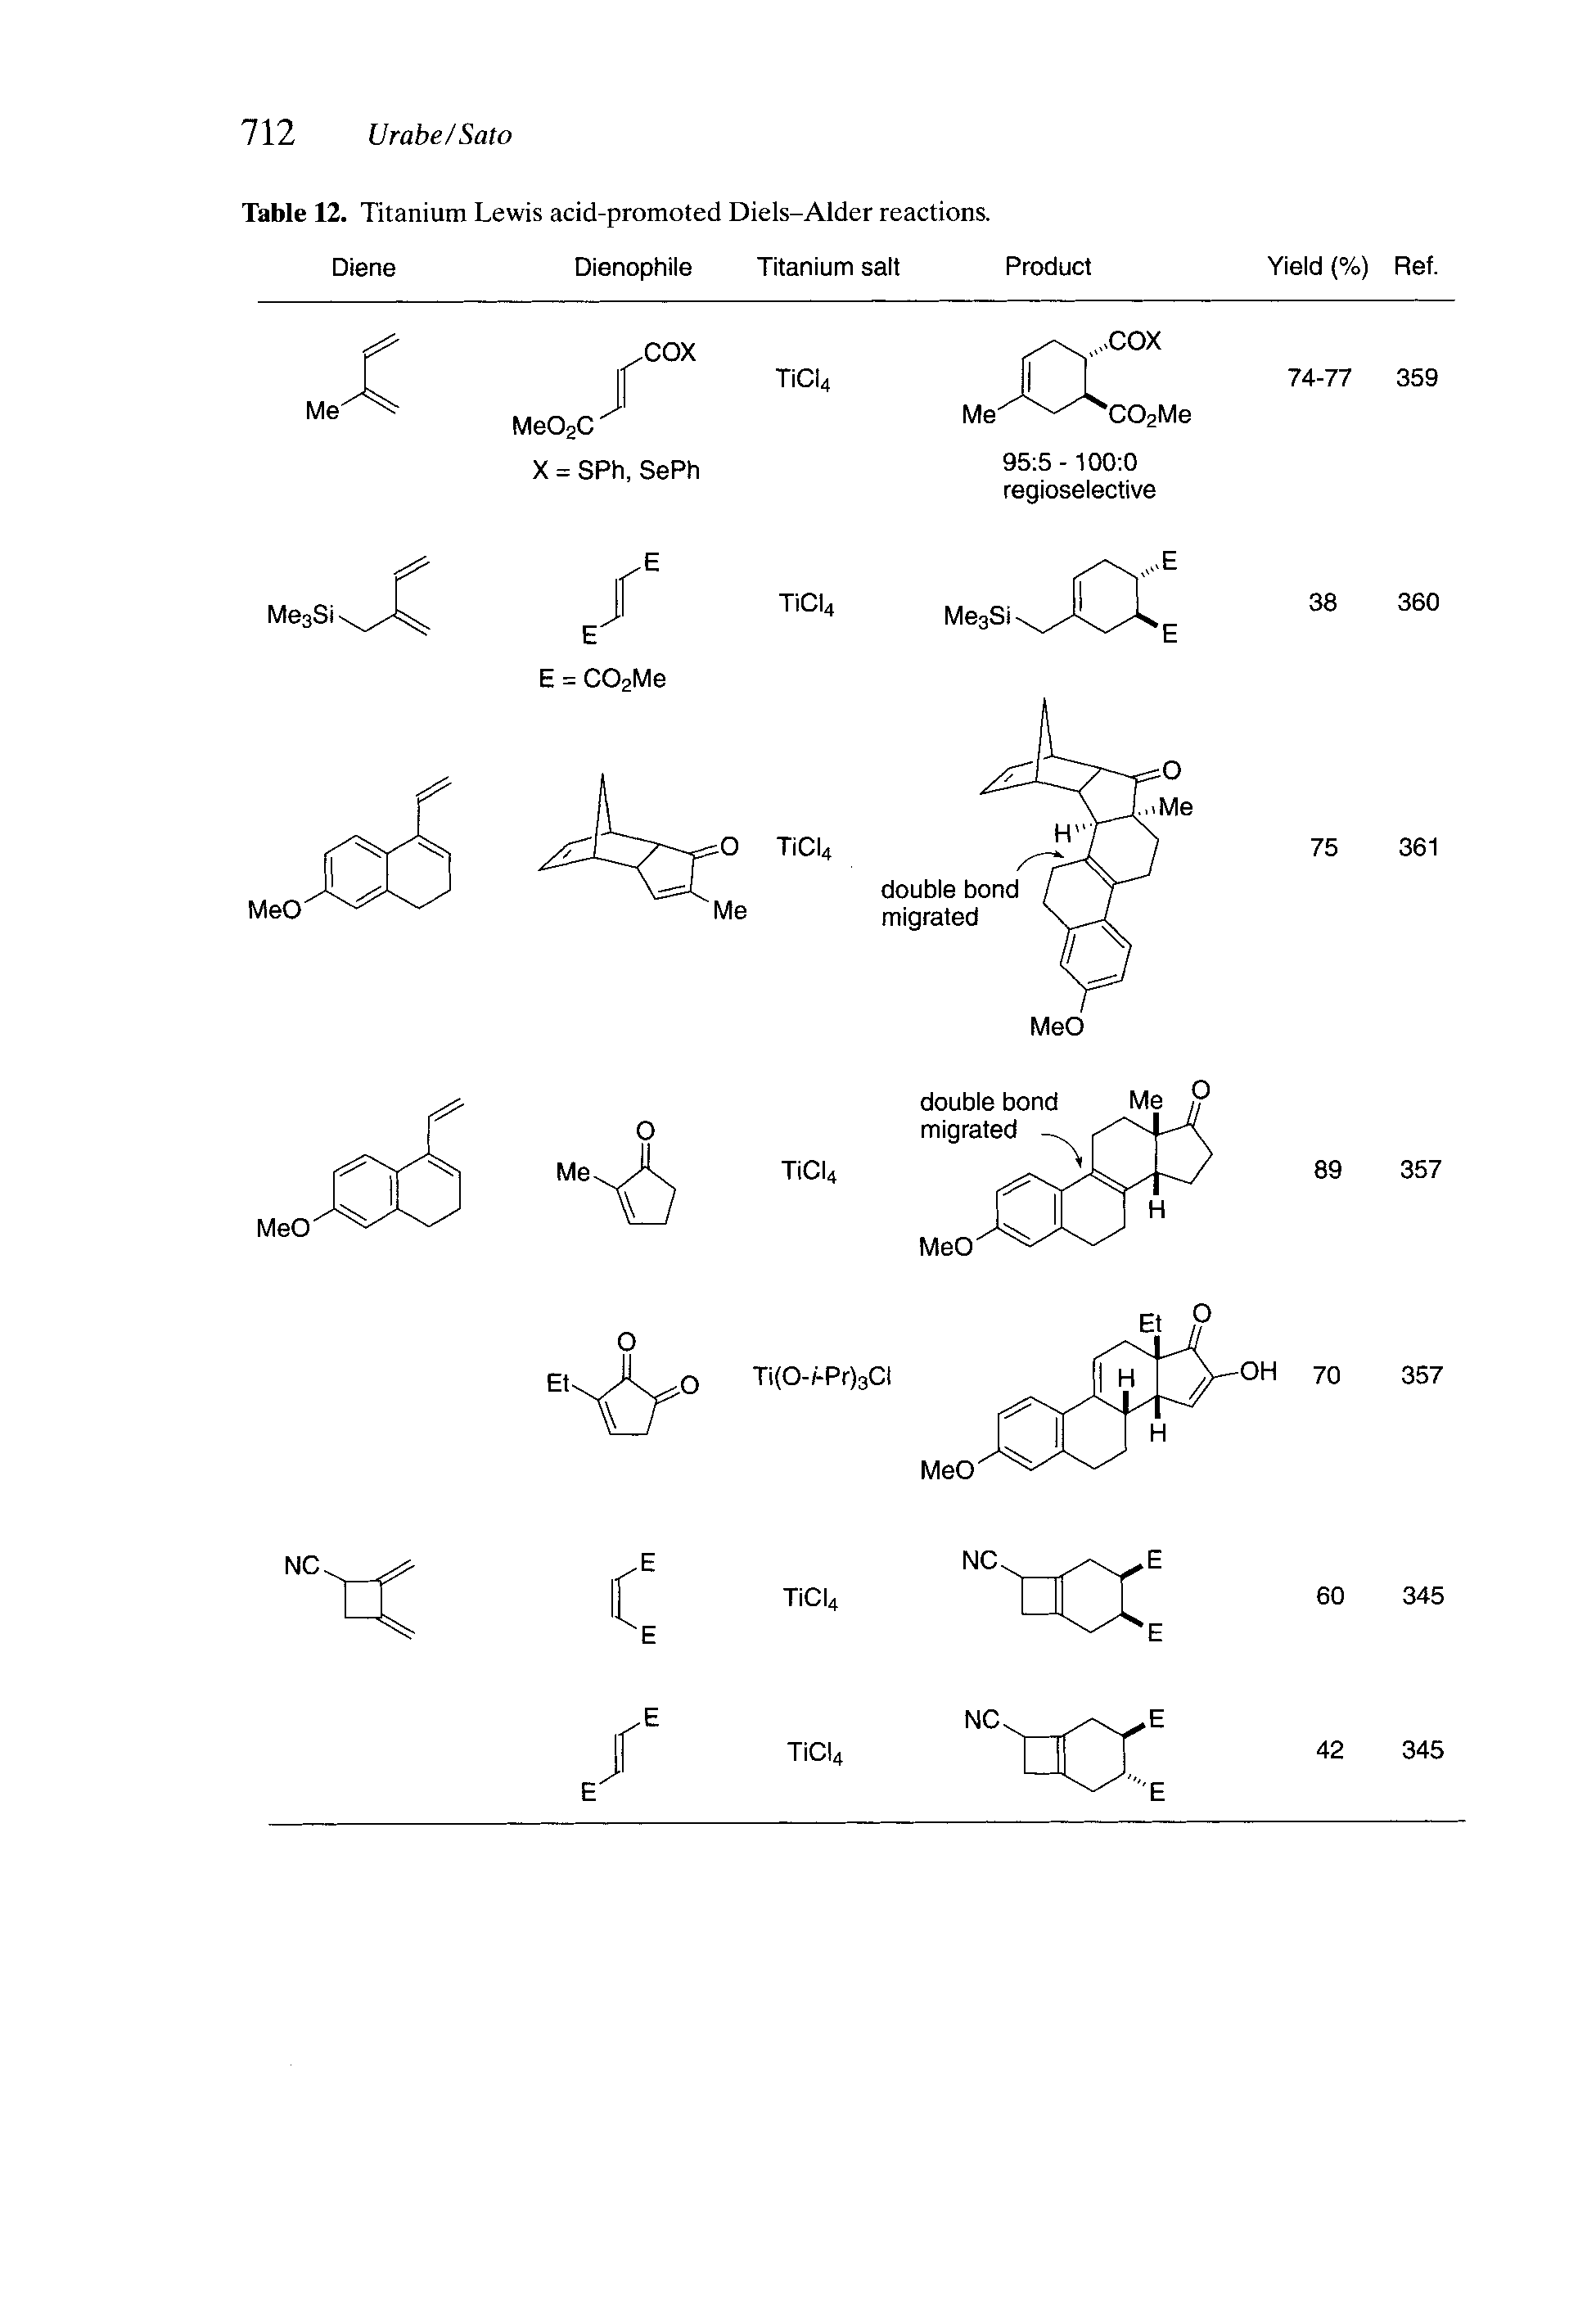 Table 12. Titanium Lewis acid-promoted Diels-Alder reactions.